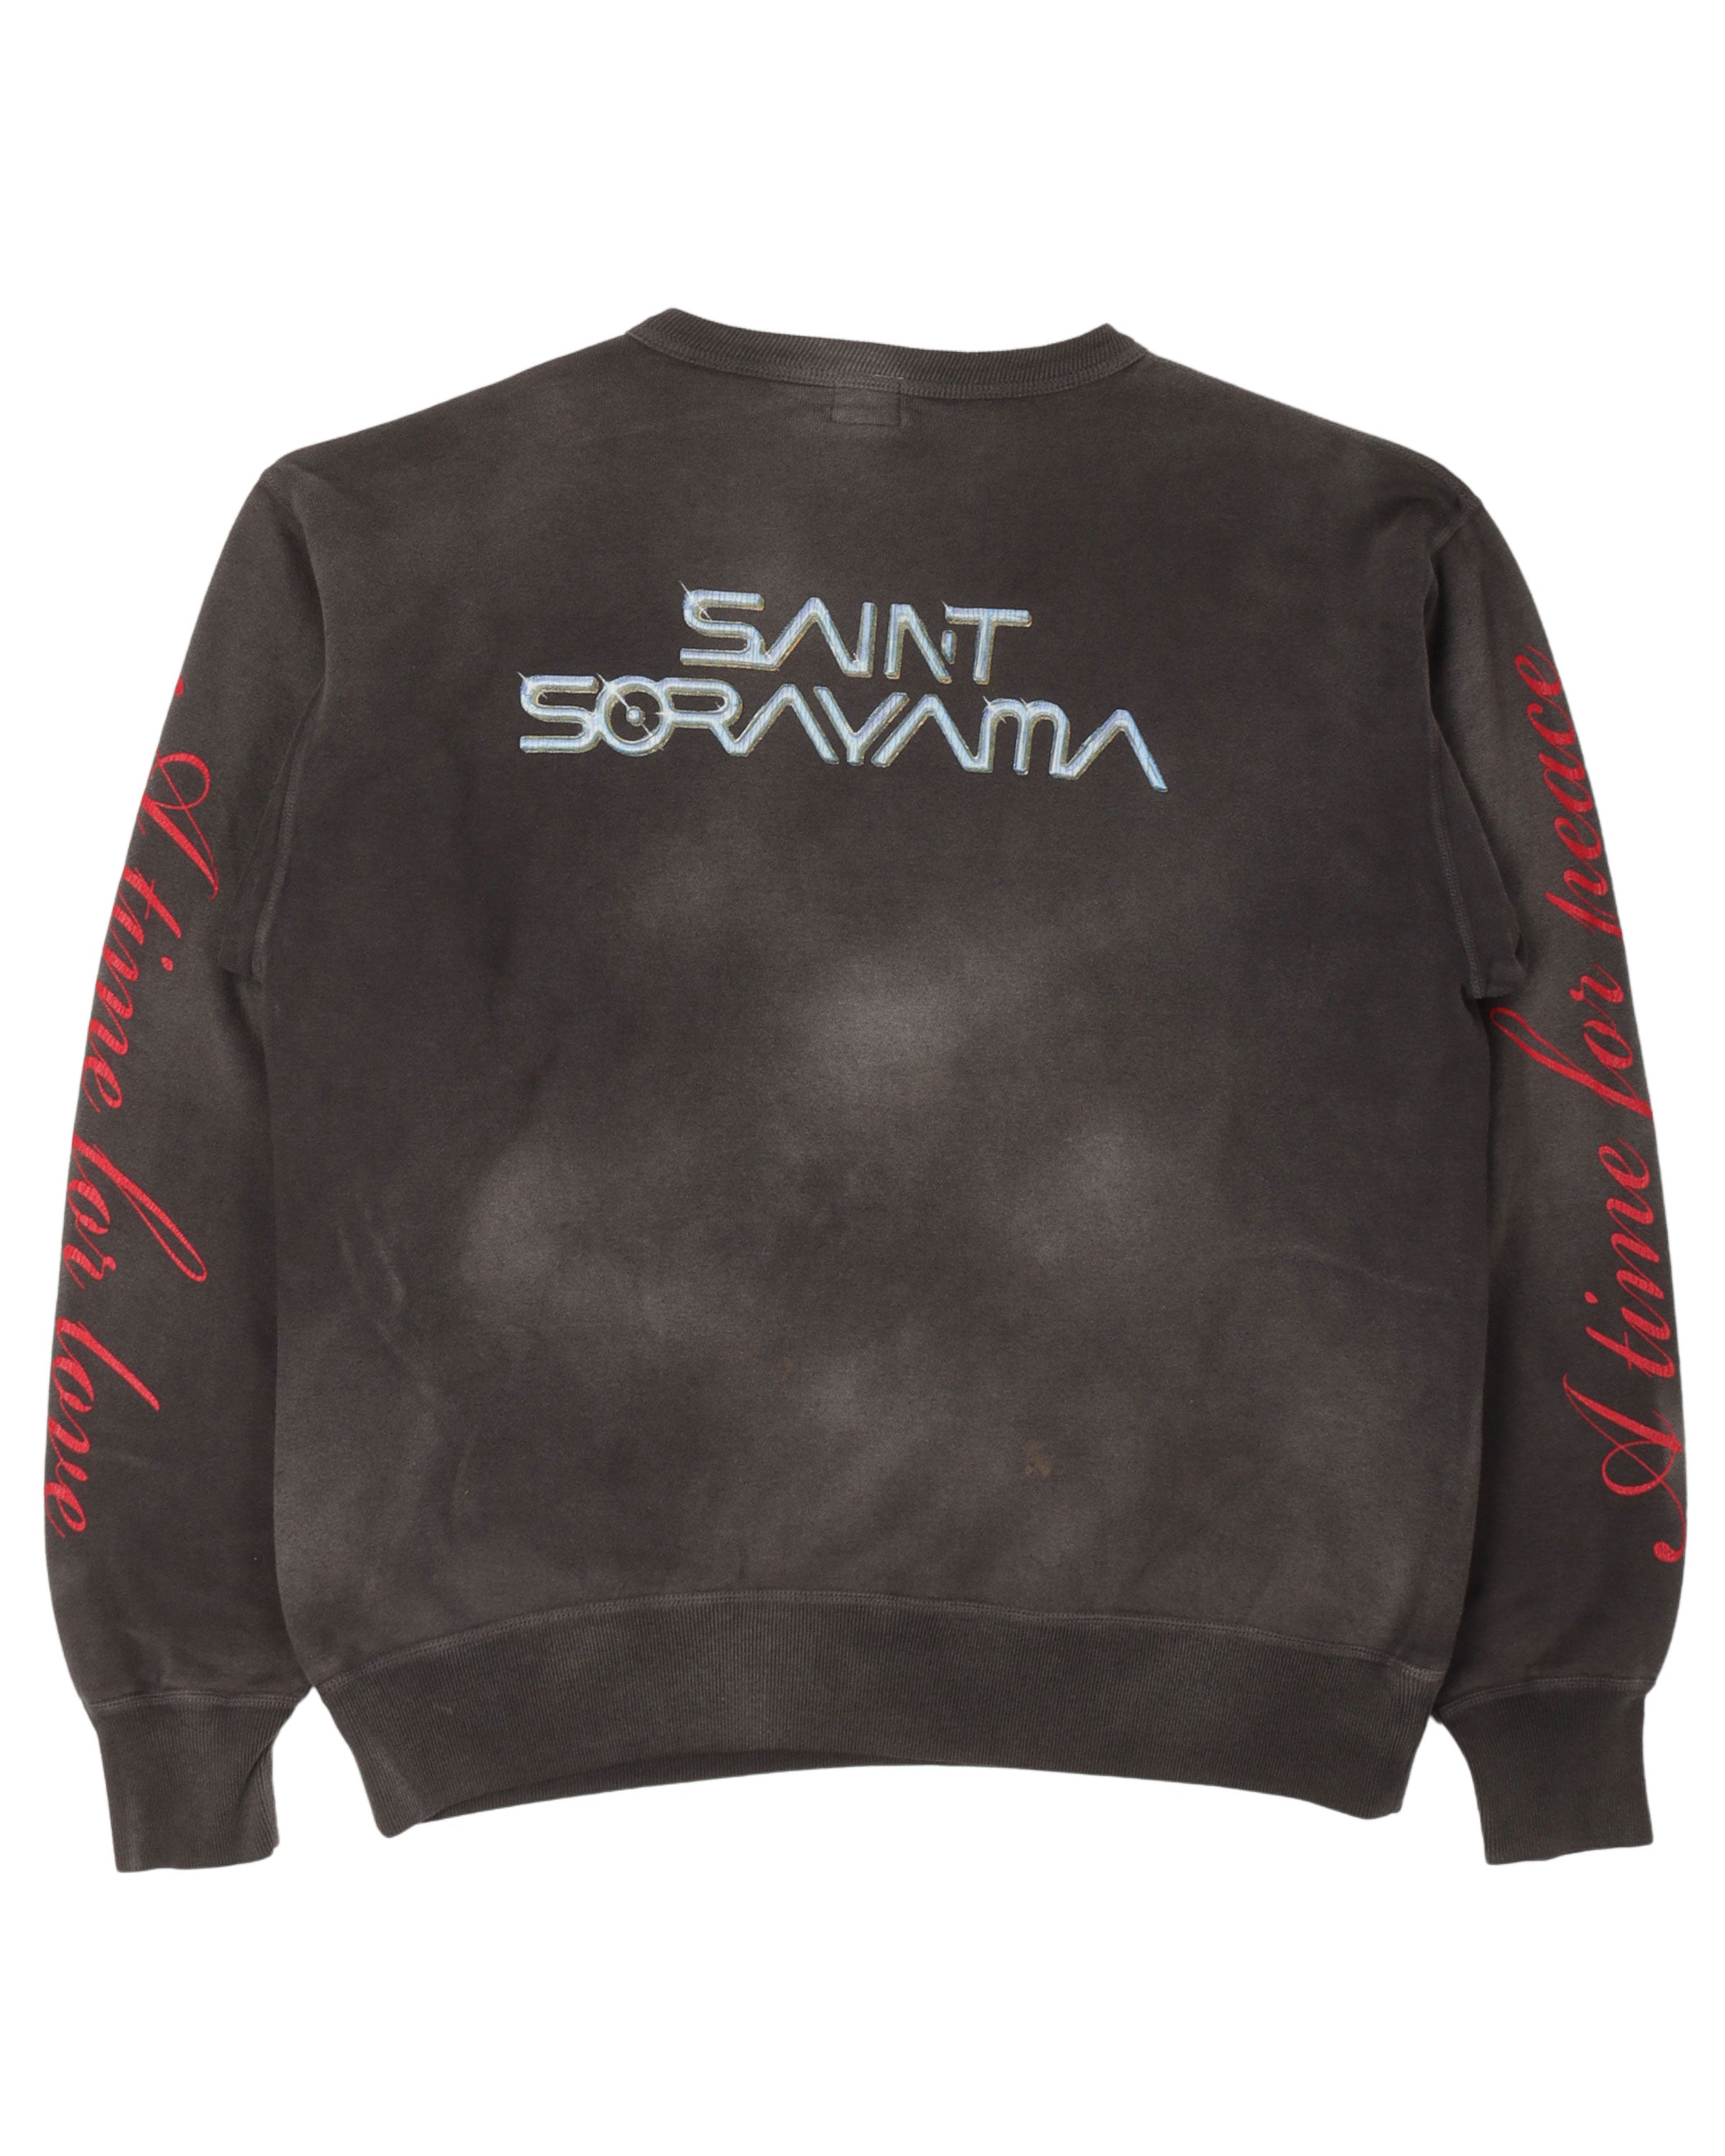 Sorayama Sweatshirt